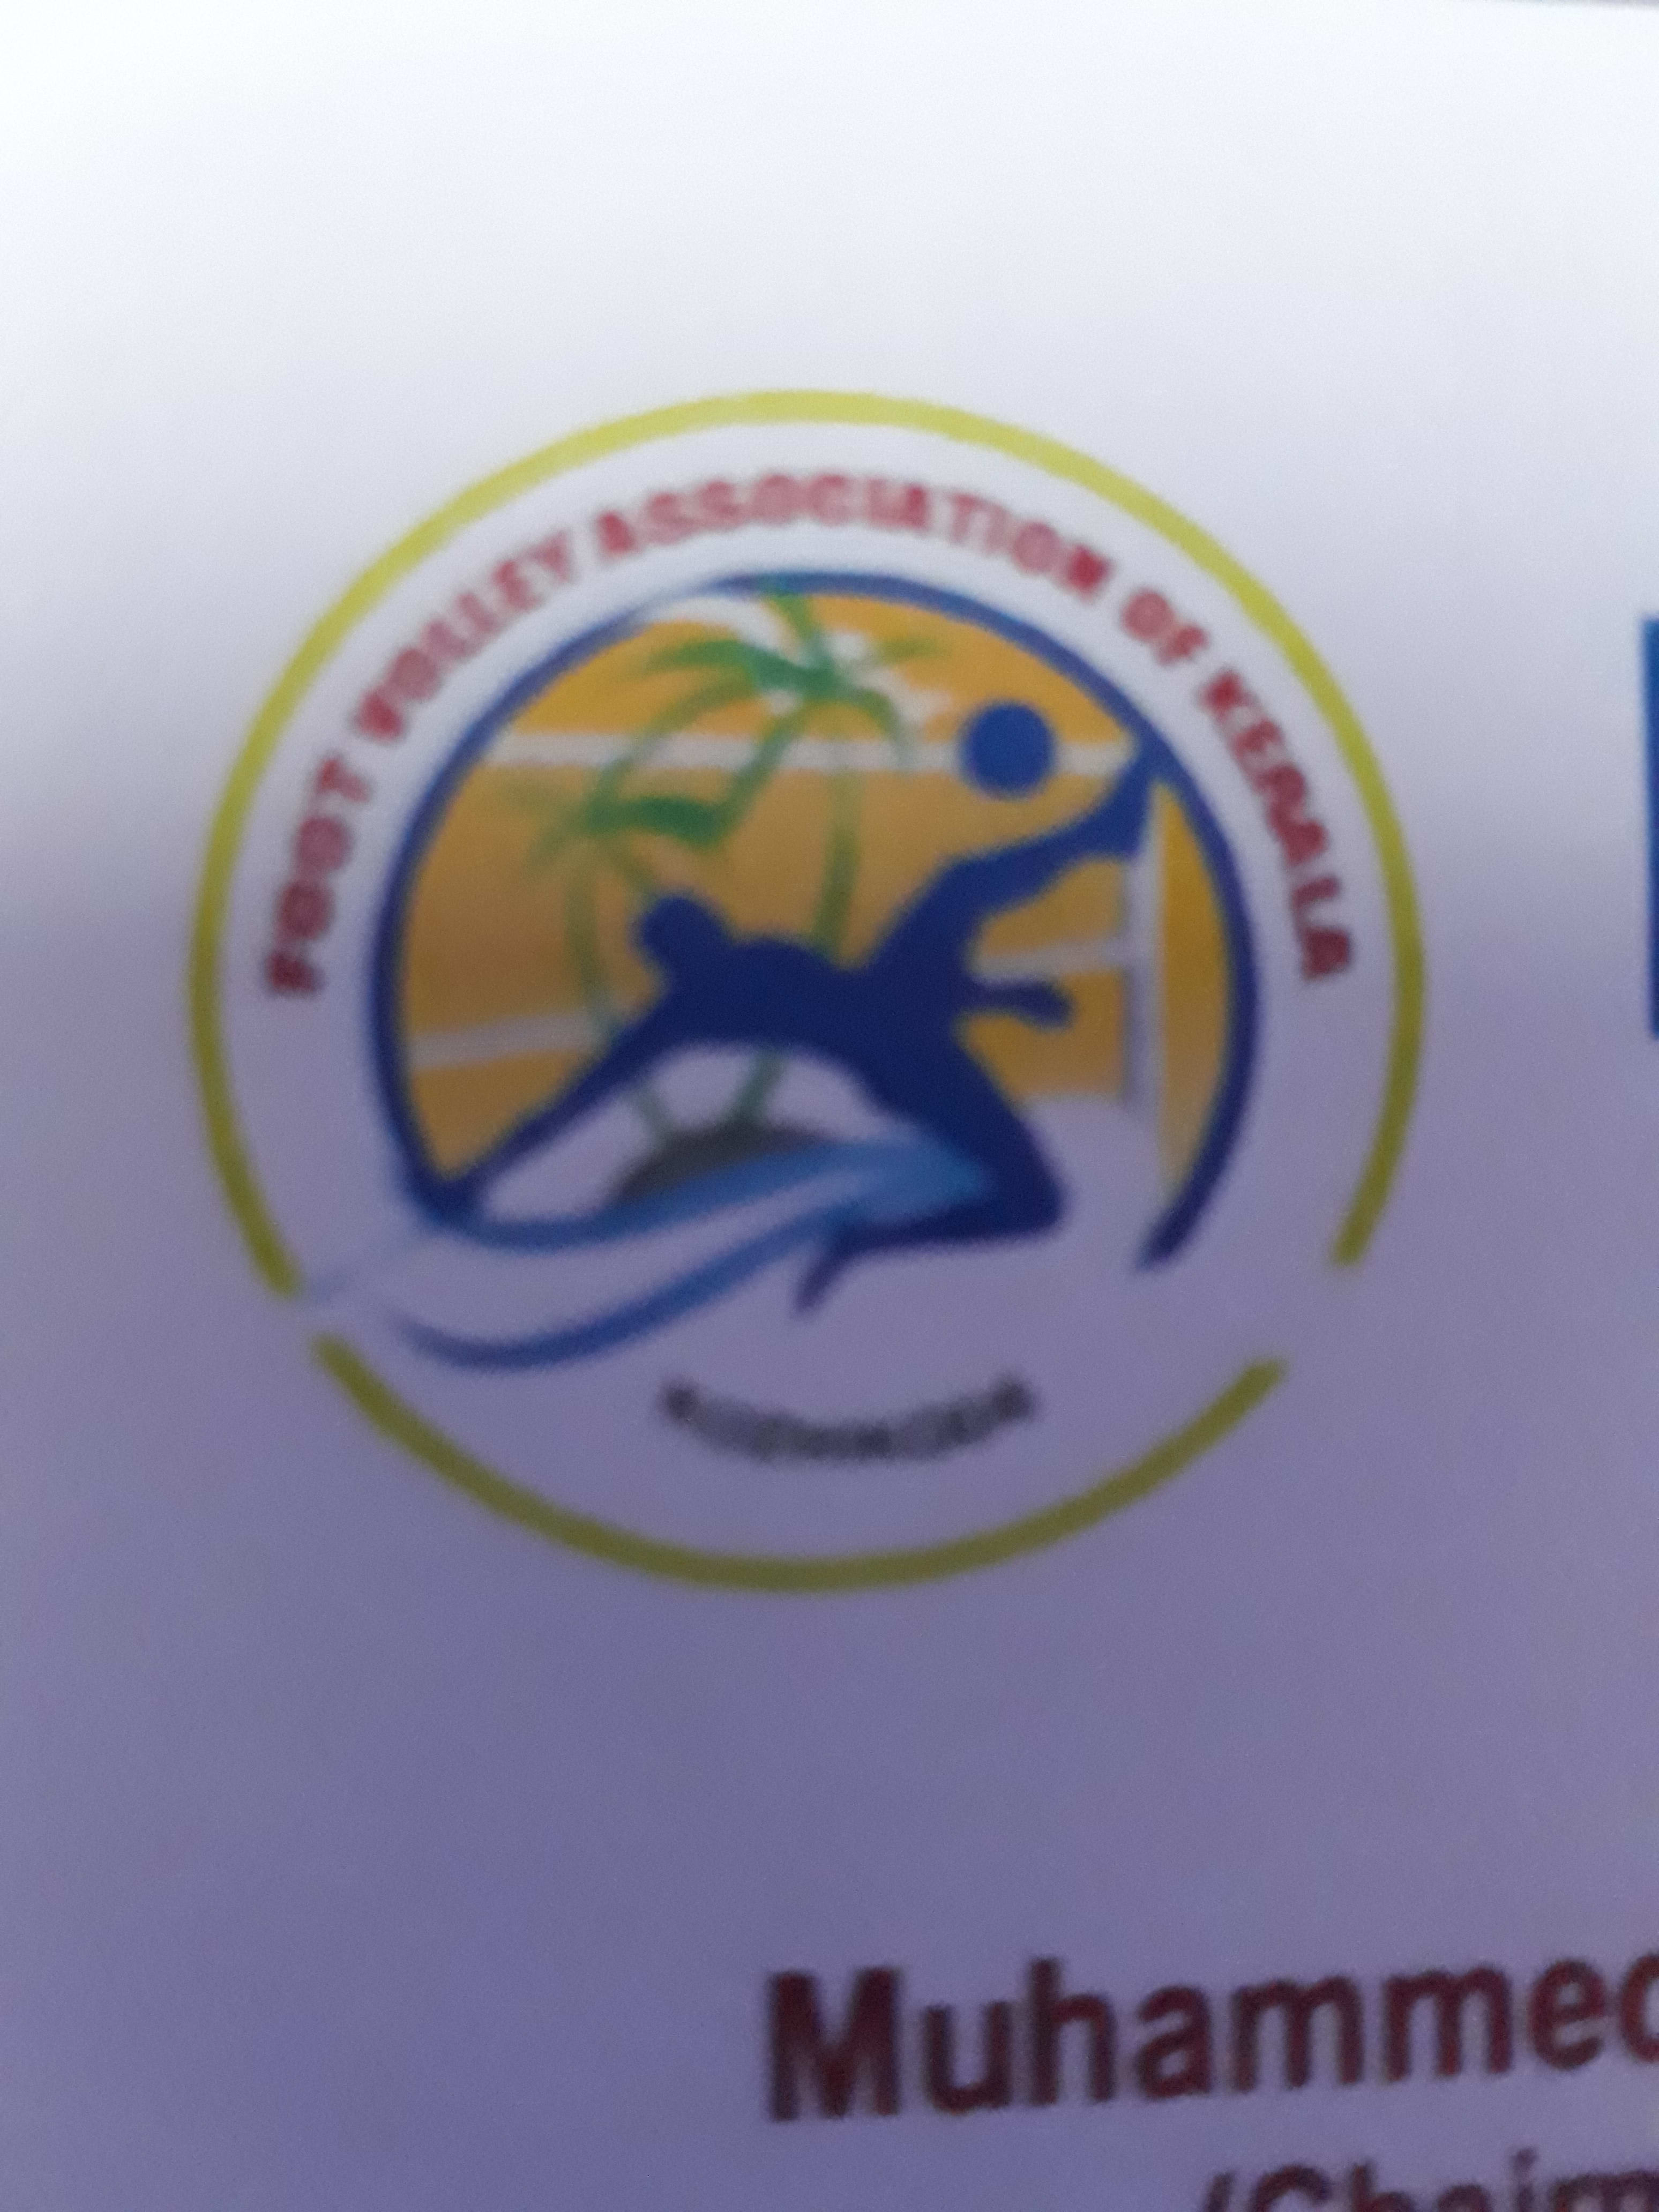 Footvolley Association of Kerala